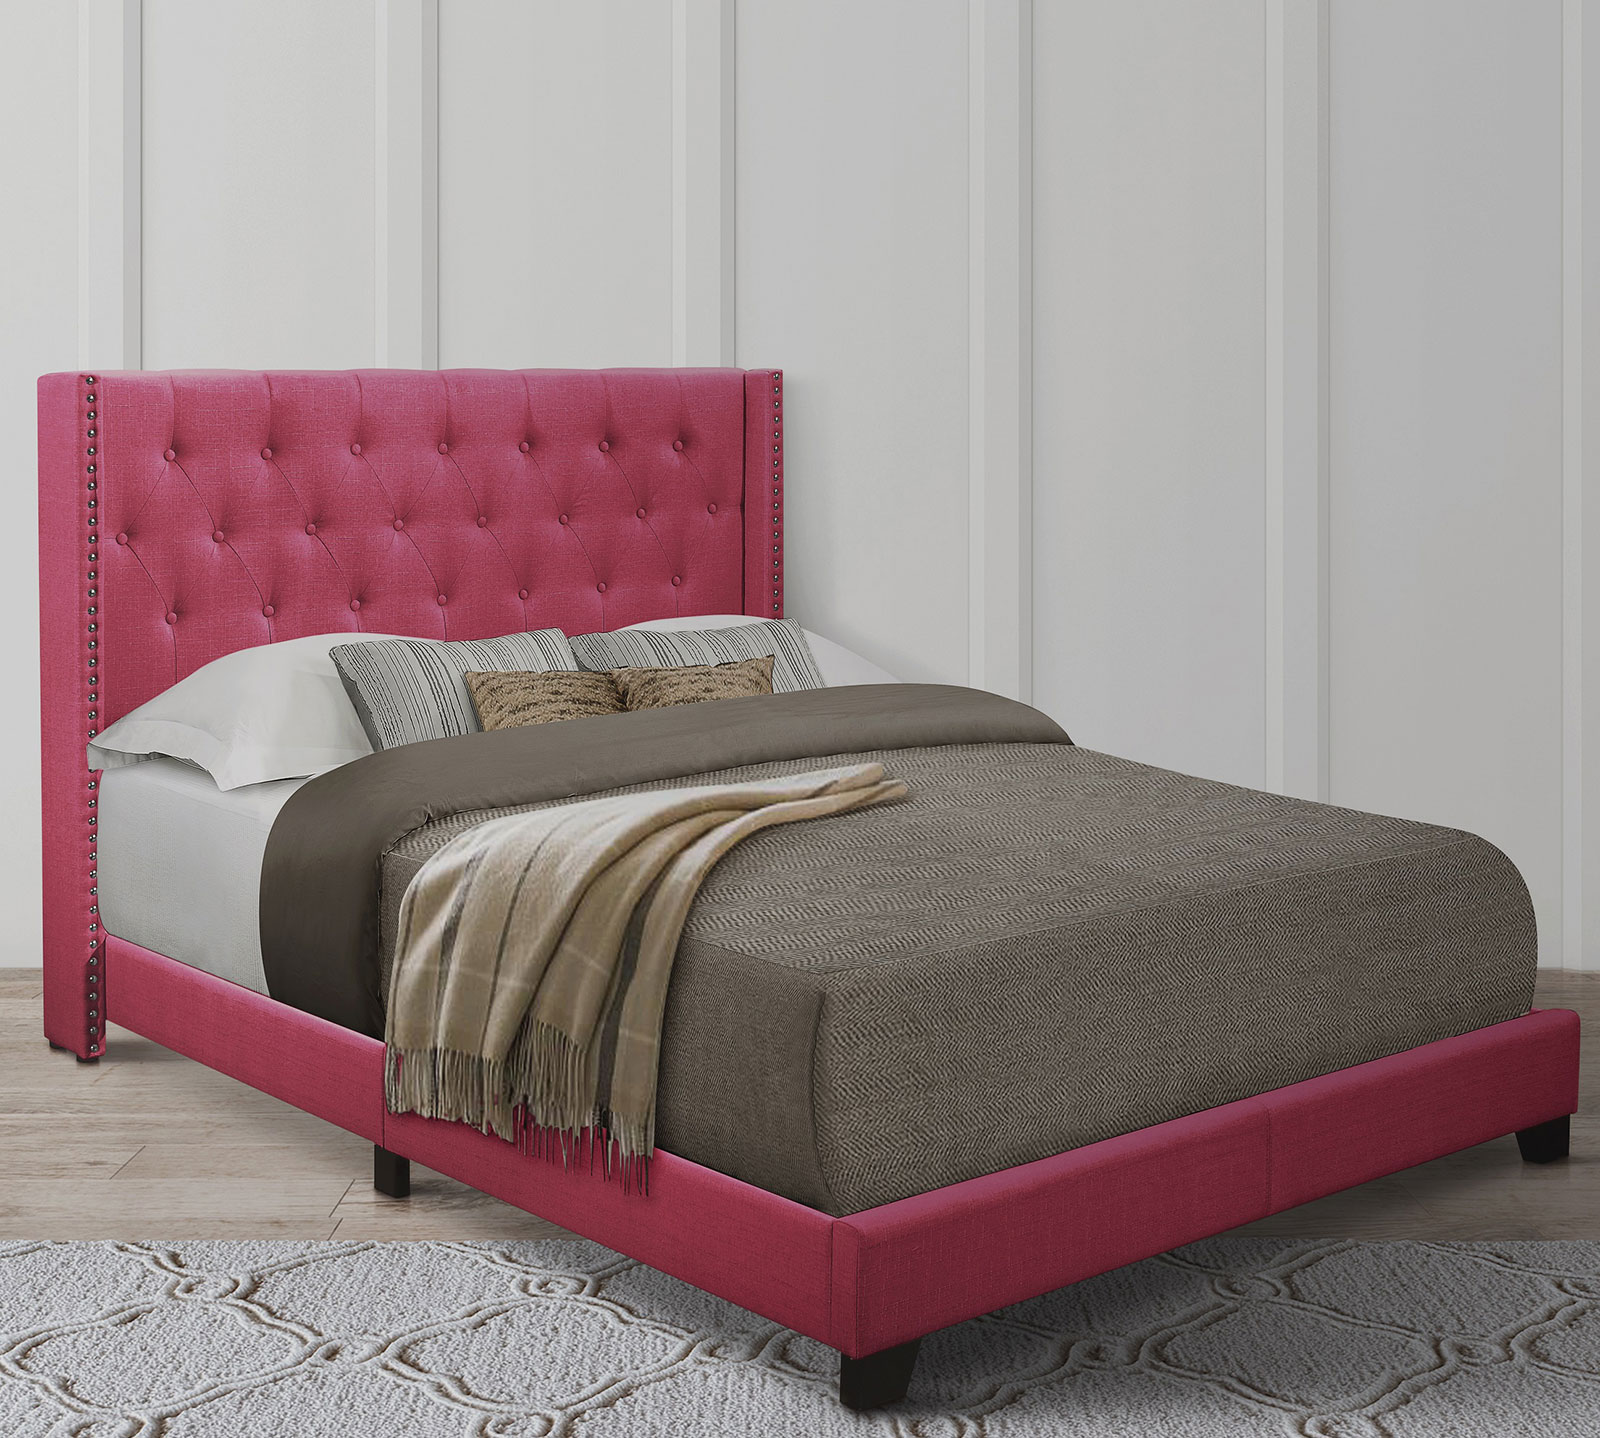 Homelegance Upholstered Bed Set | King | Avery Bed Frame & Headboard | Pink